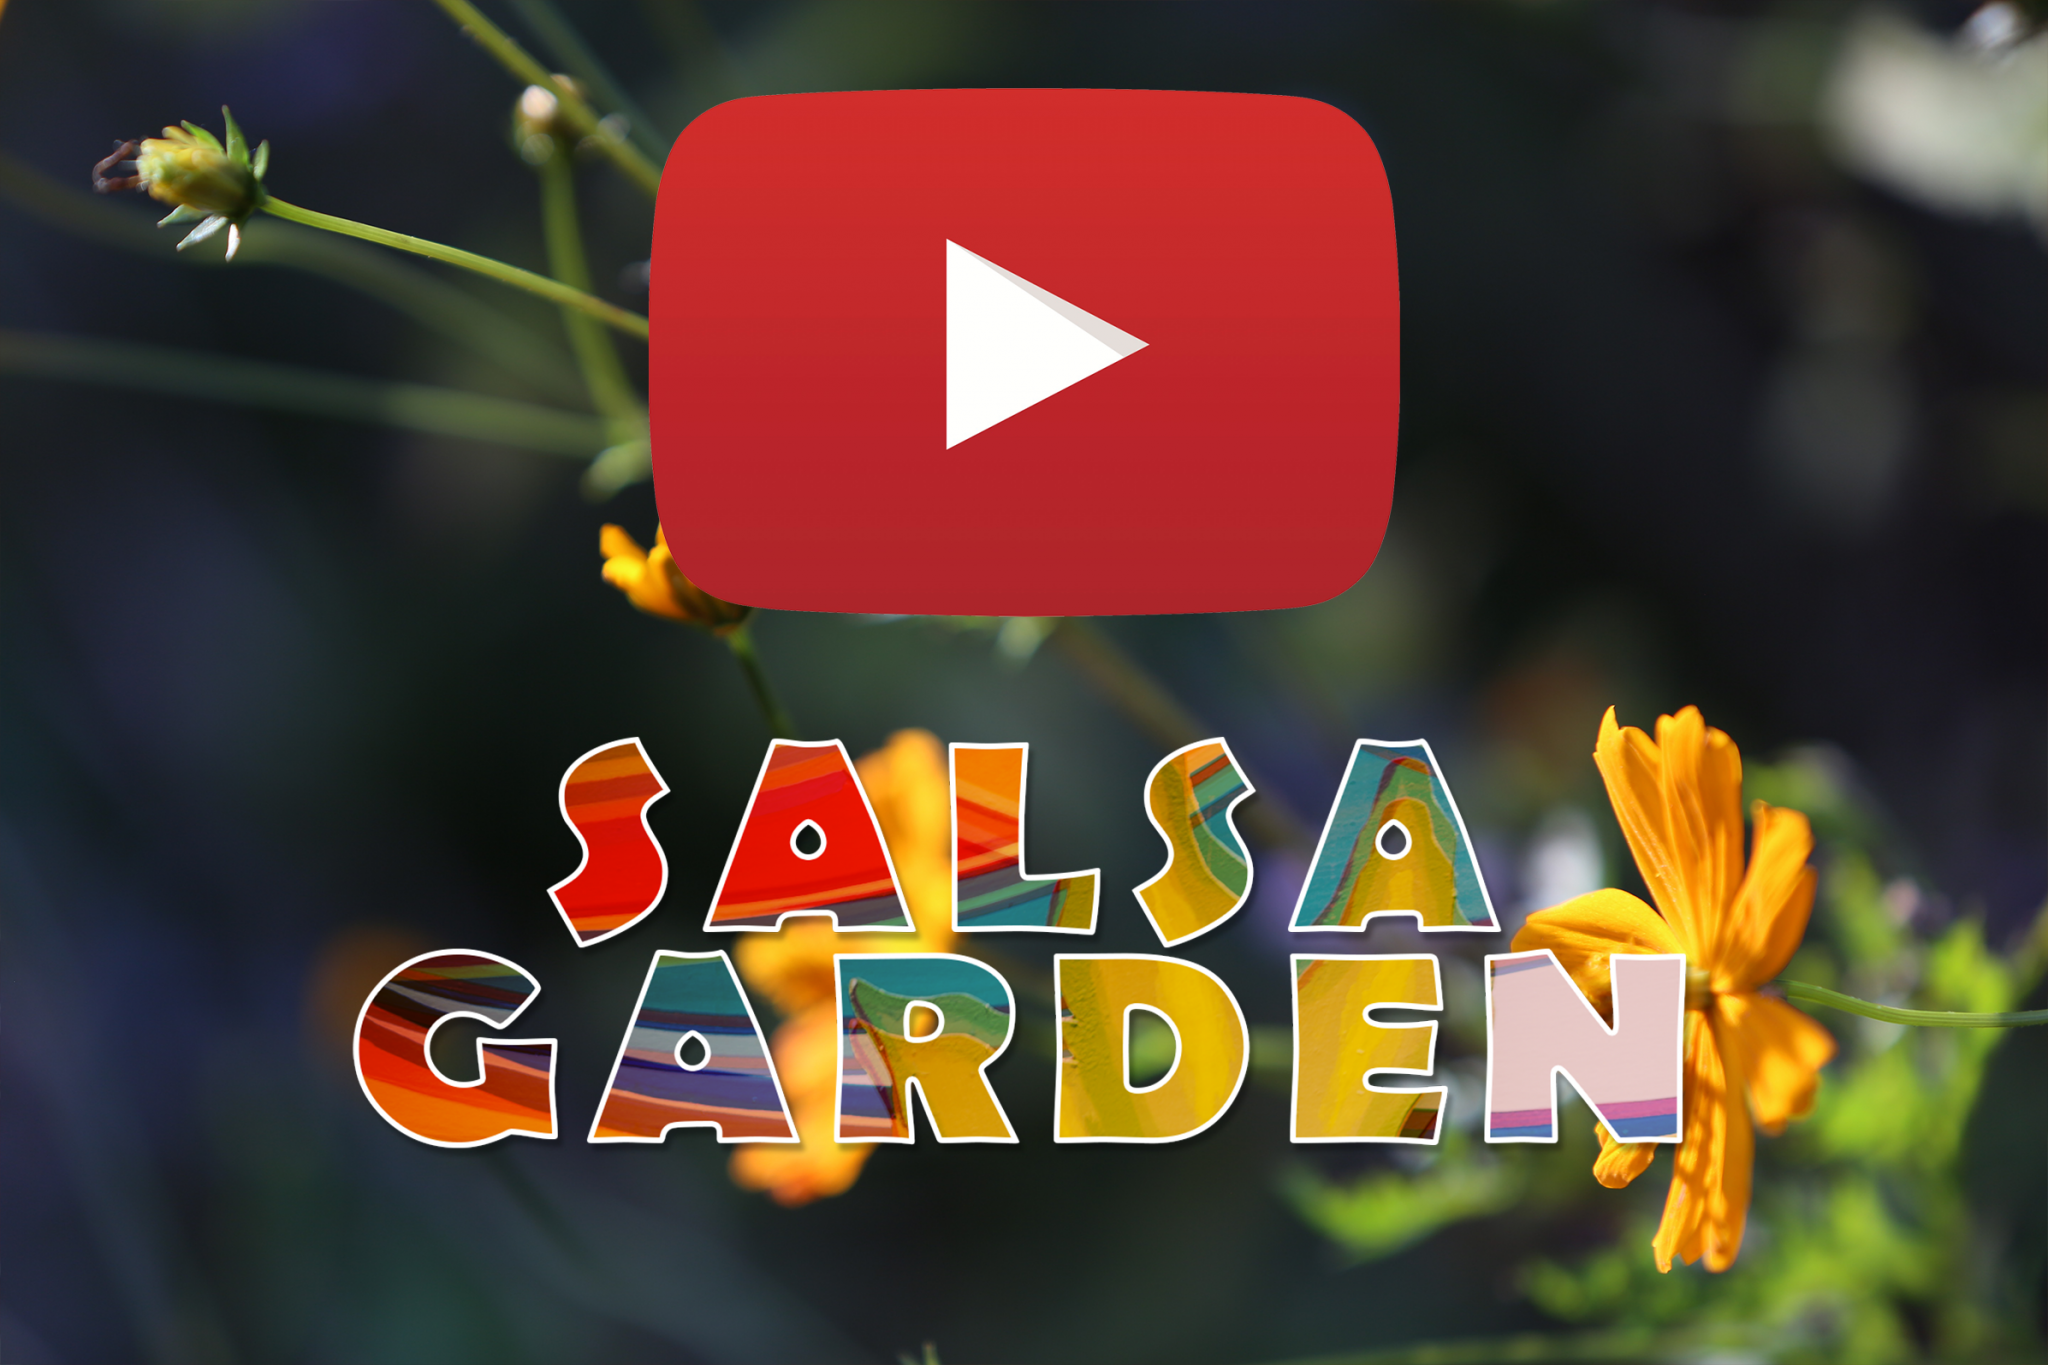 The first OFFICIAL MUSIC VIDEO My Salsa Garden